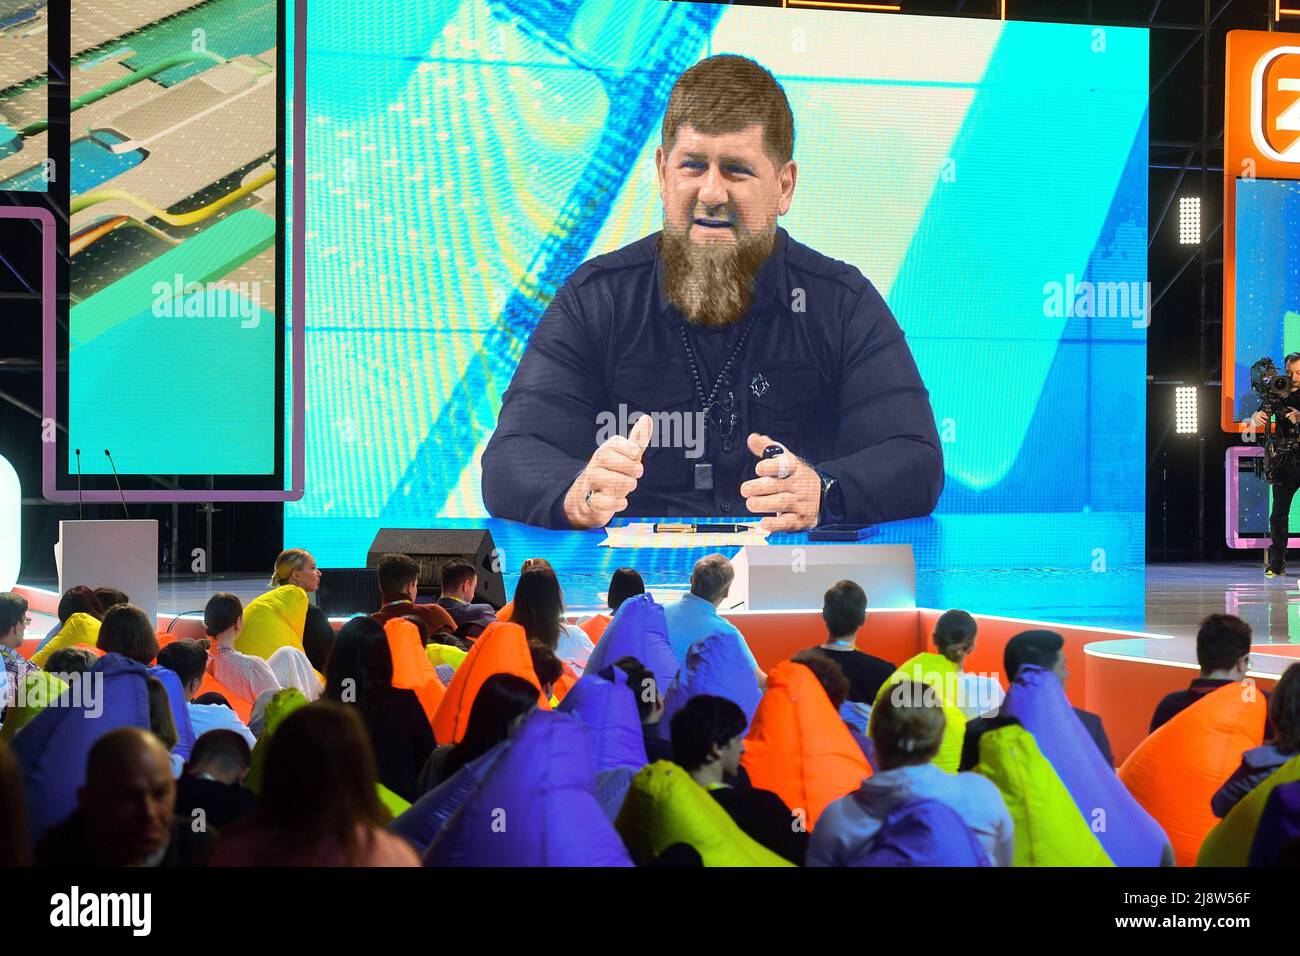 Federal Educational Marathon „New Horizons“ am VDNH. Der Chef der tschetschenischen Republik Ramsan Kadyrow (auf dem Bildschirm) während einer Rede. 18.05.2022 Russland, Moskau Bildnachweis: Emin Dzhafarov/Kommersant/Sipa USA Stockfoto